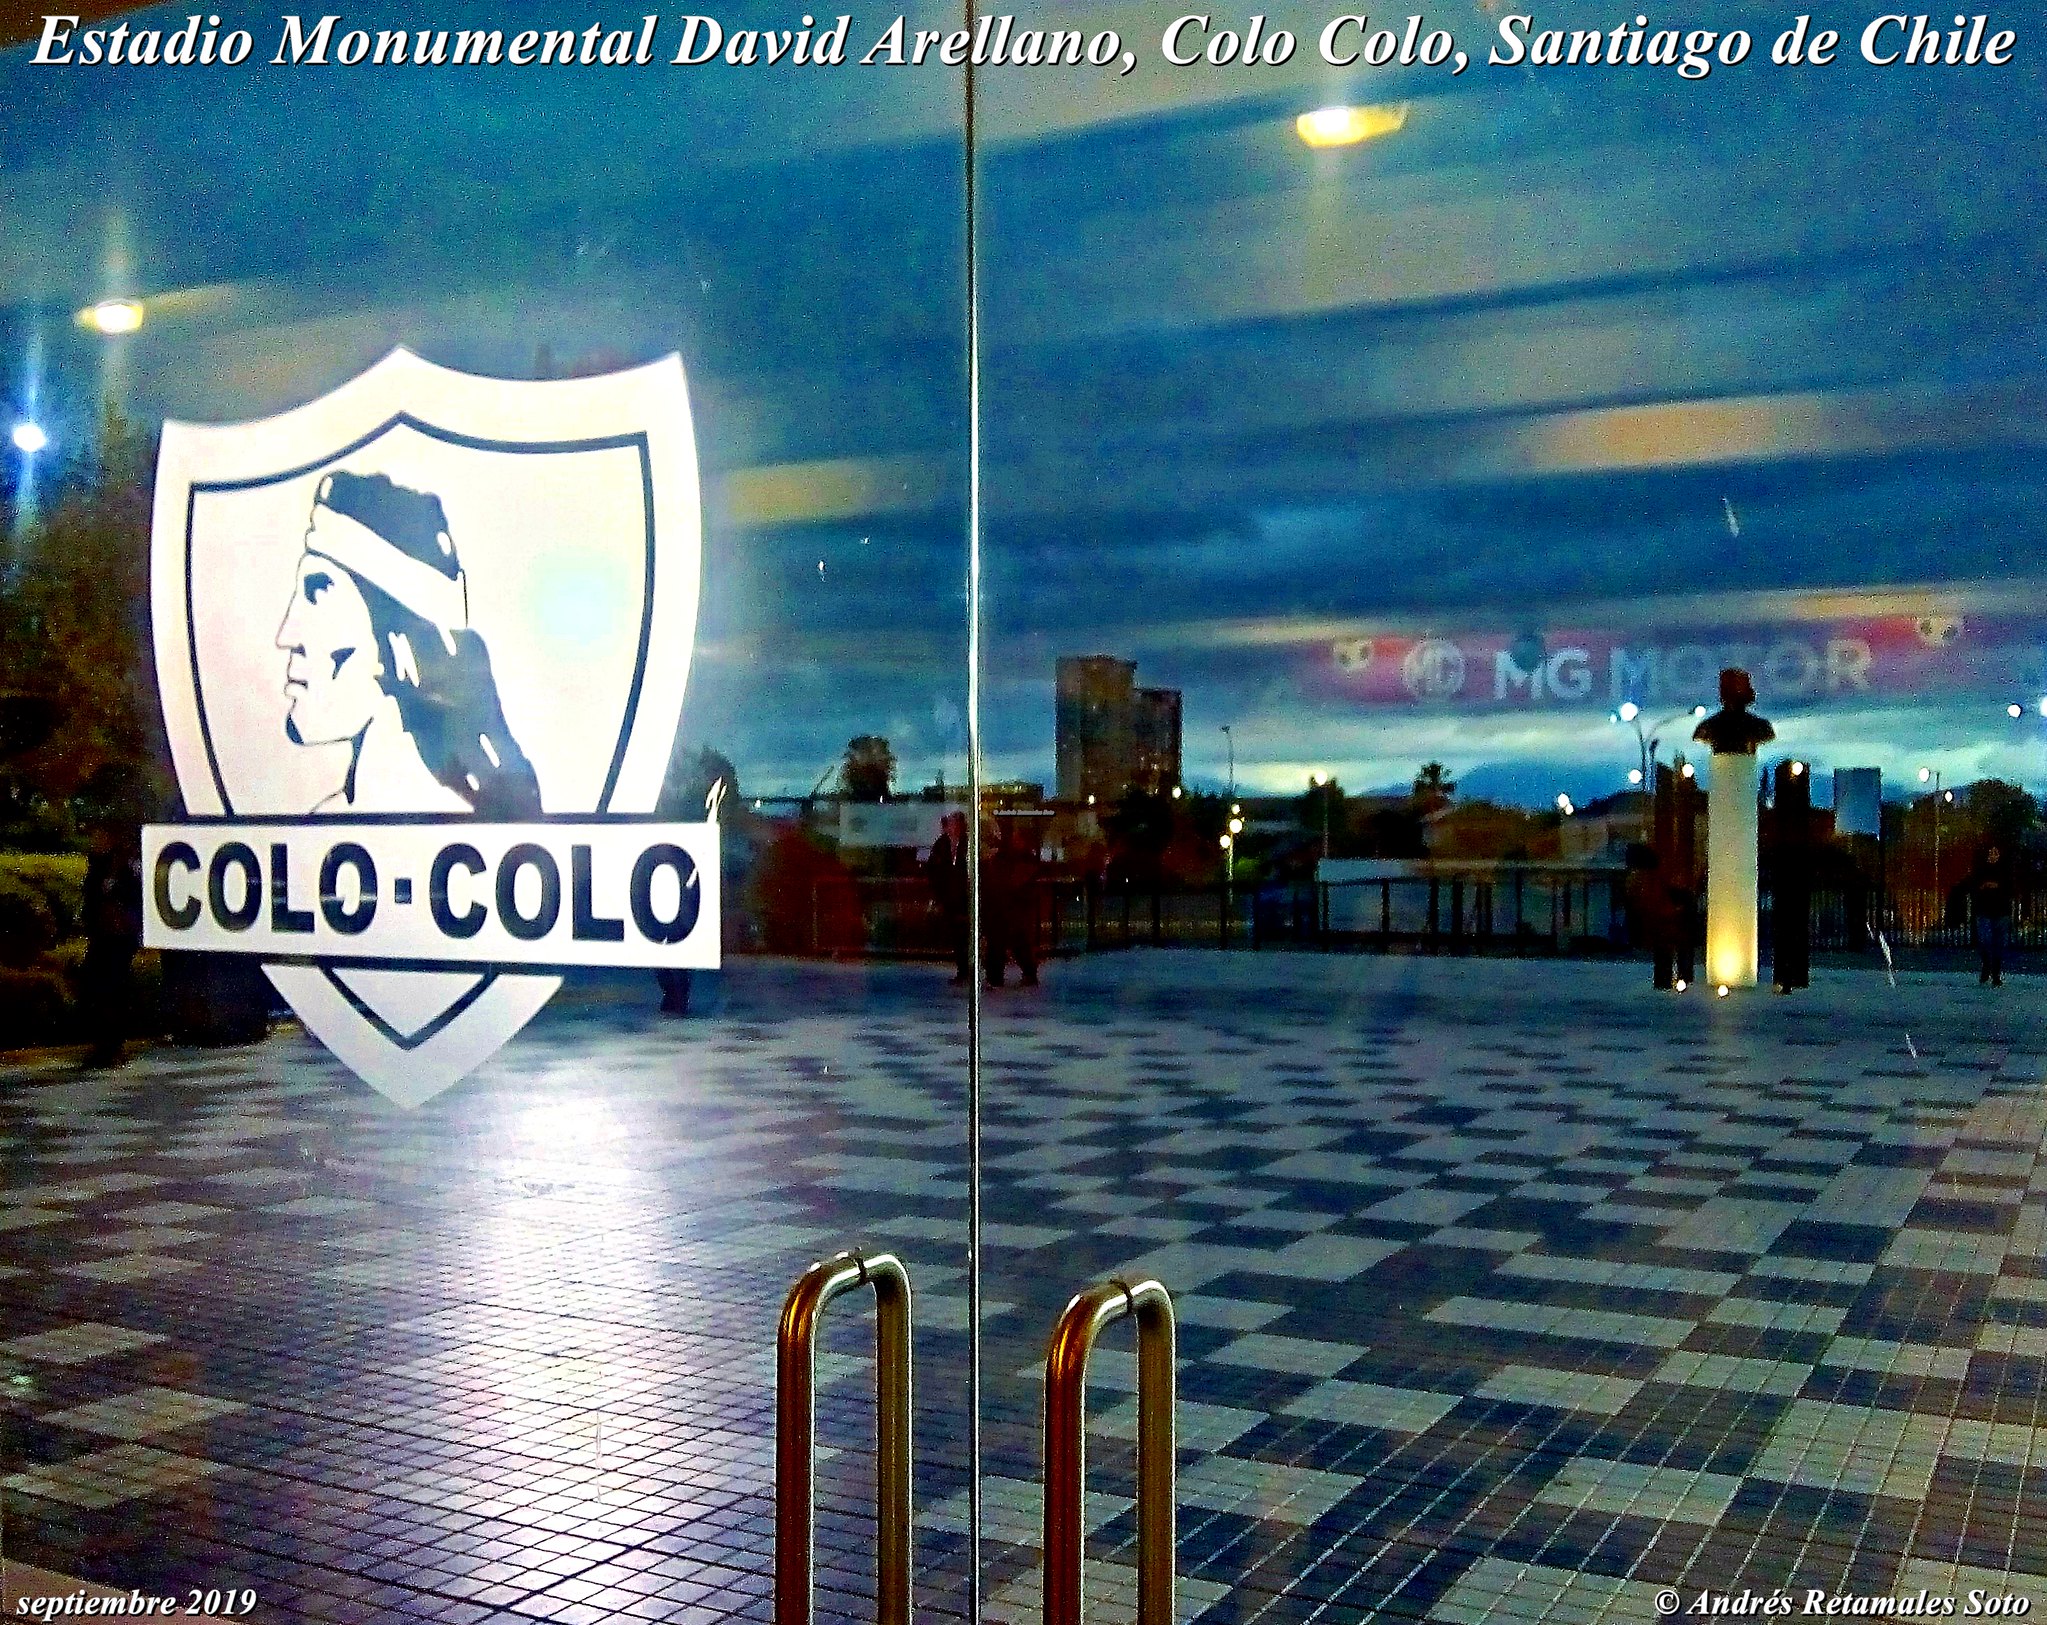 Estadio Monumental David Arellano, Colo Colo, Santiago de Chile, septiembre 2019 ⚽️🆑 #EstadioMonumental #EternoCampeón #ColoColo